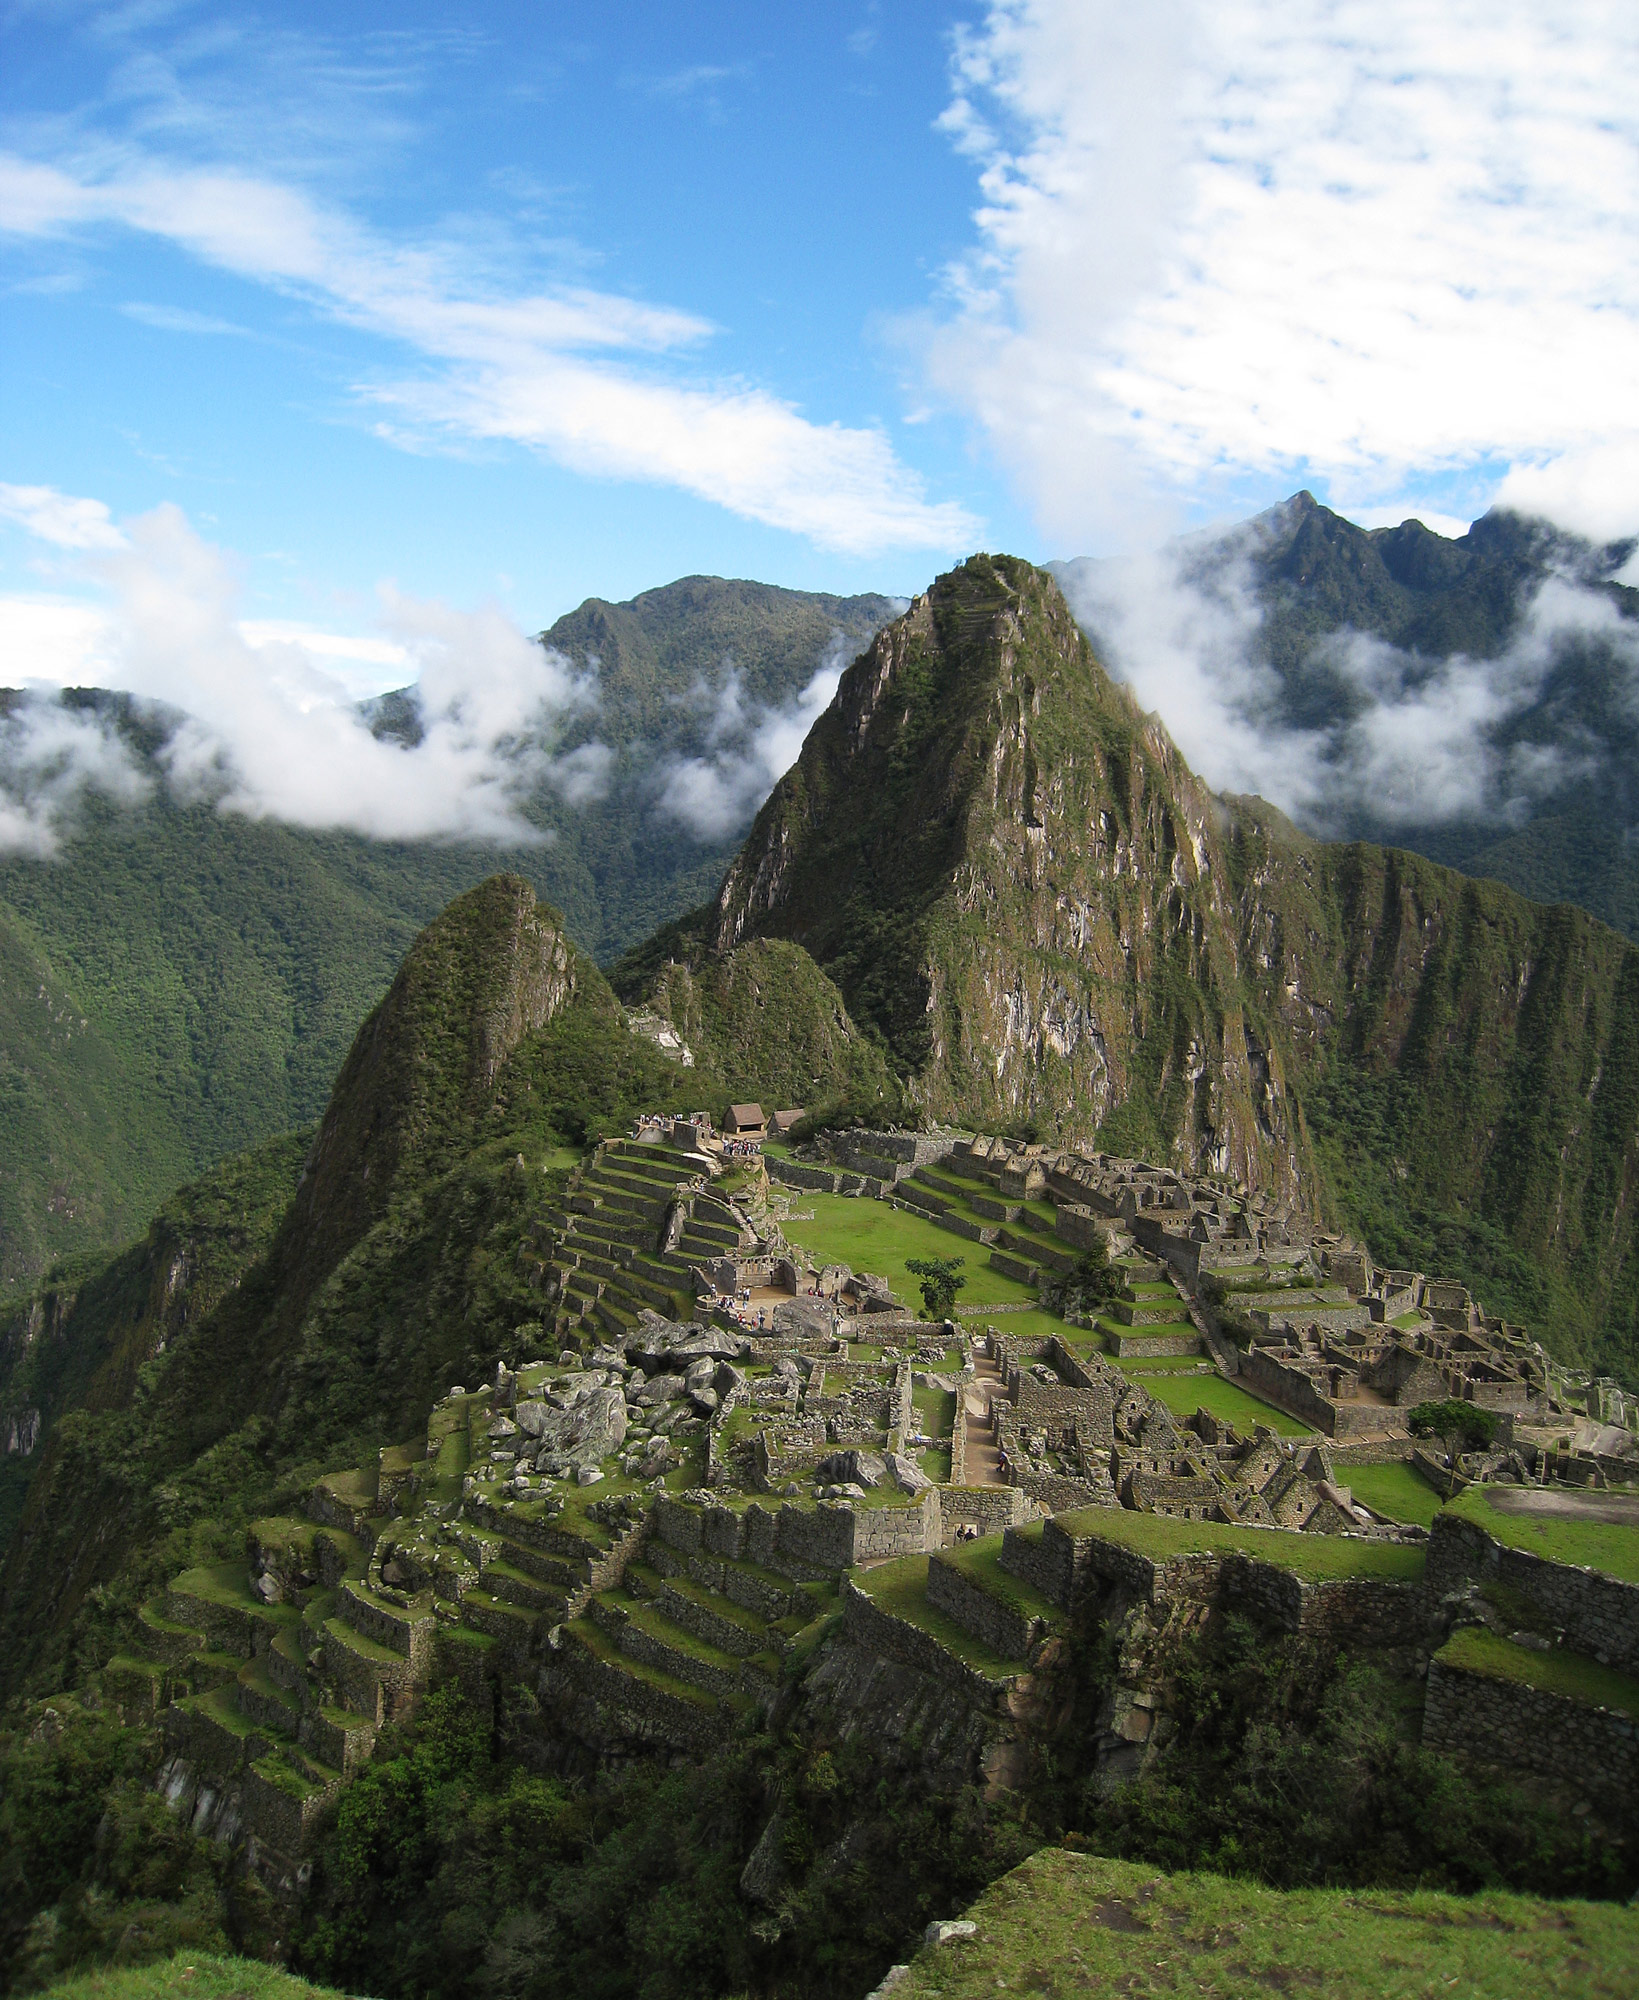 Najbardziej znane starożytne ruiny Peru, Machu Picchu. Zdjęcie autorstwa użytkownika Flickr Icelight (CC BY).